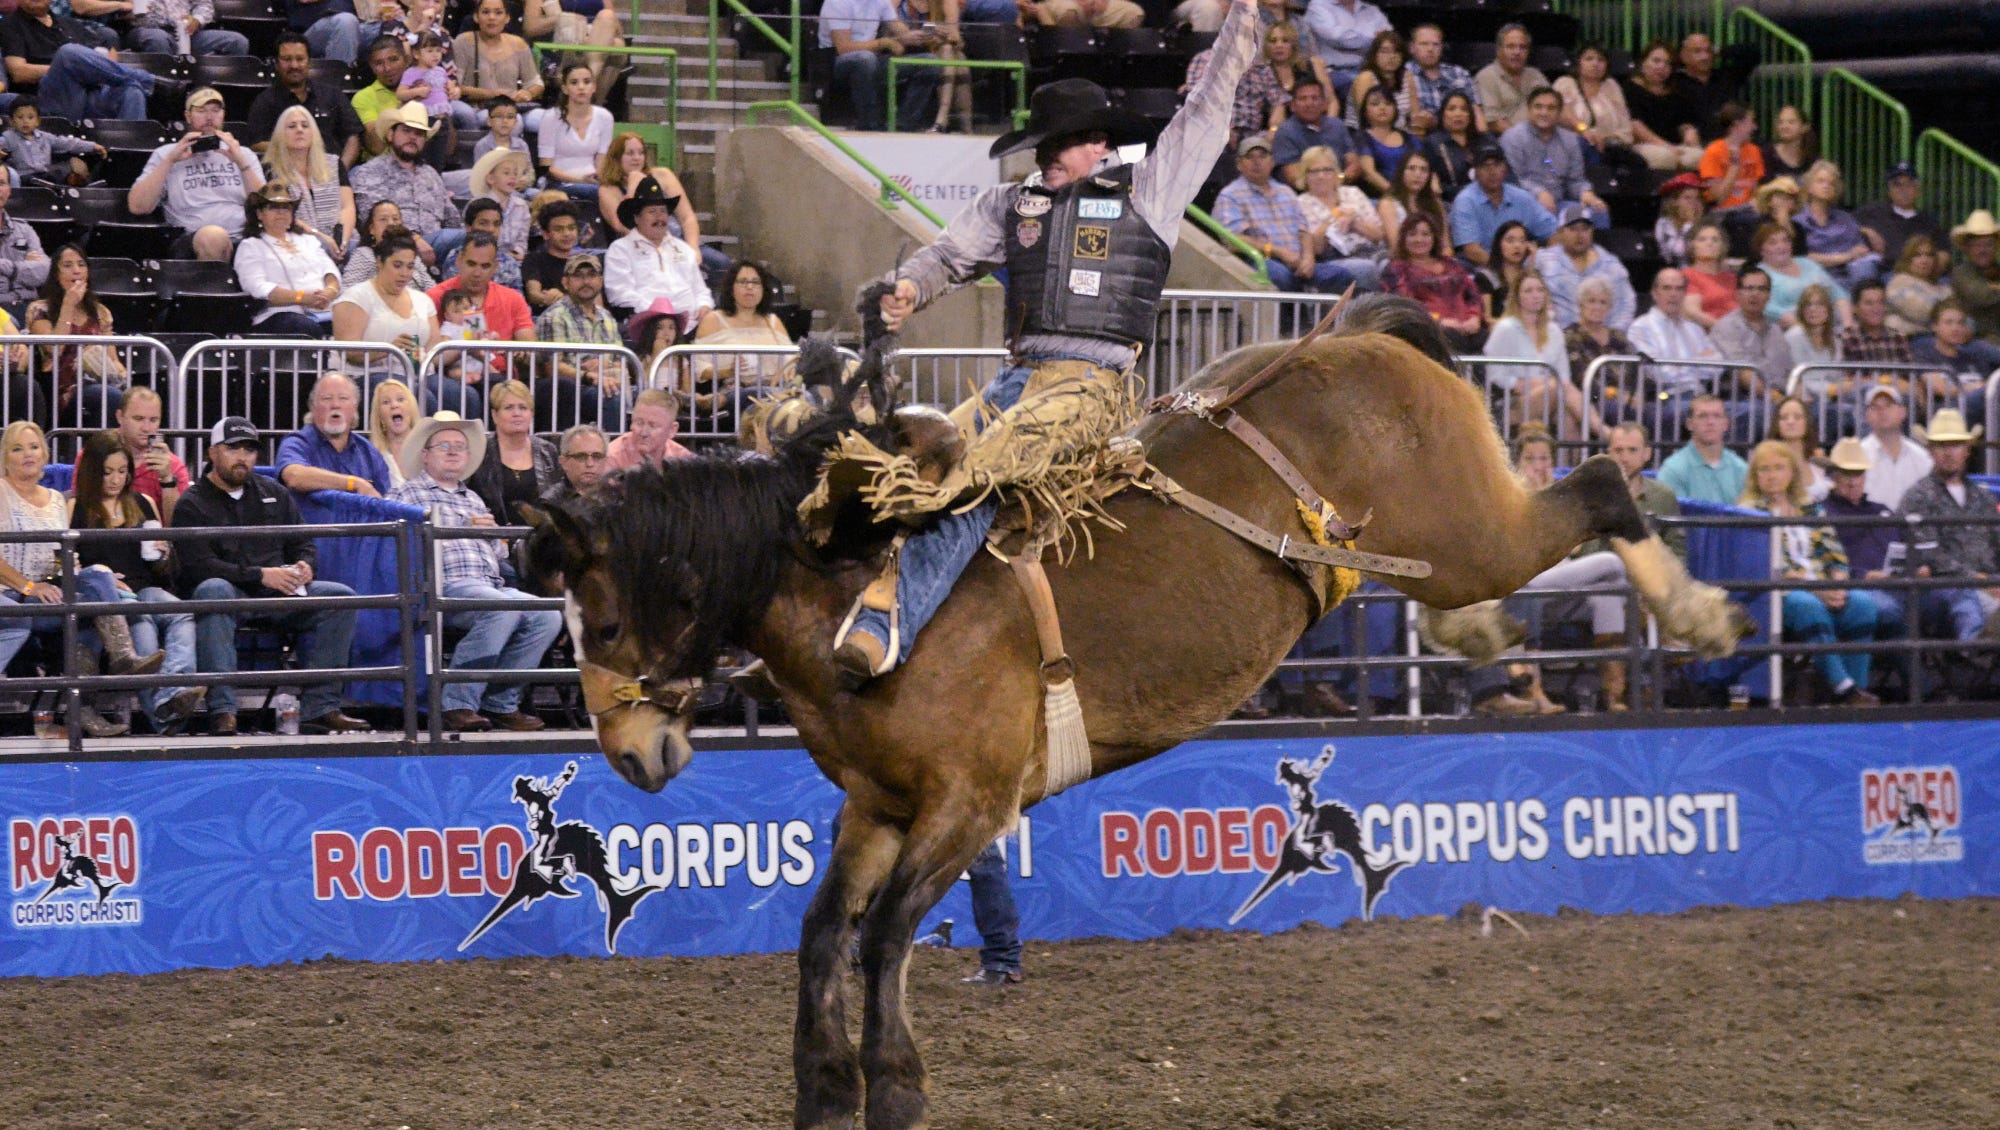 WorldChampion Bucking Horses Coming to Buc Days’ Rodeo Corpus Christi